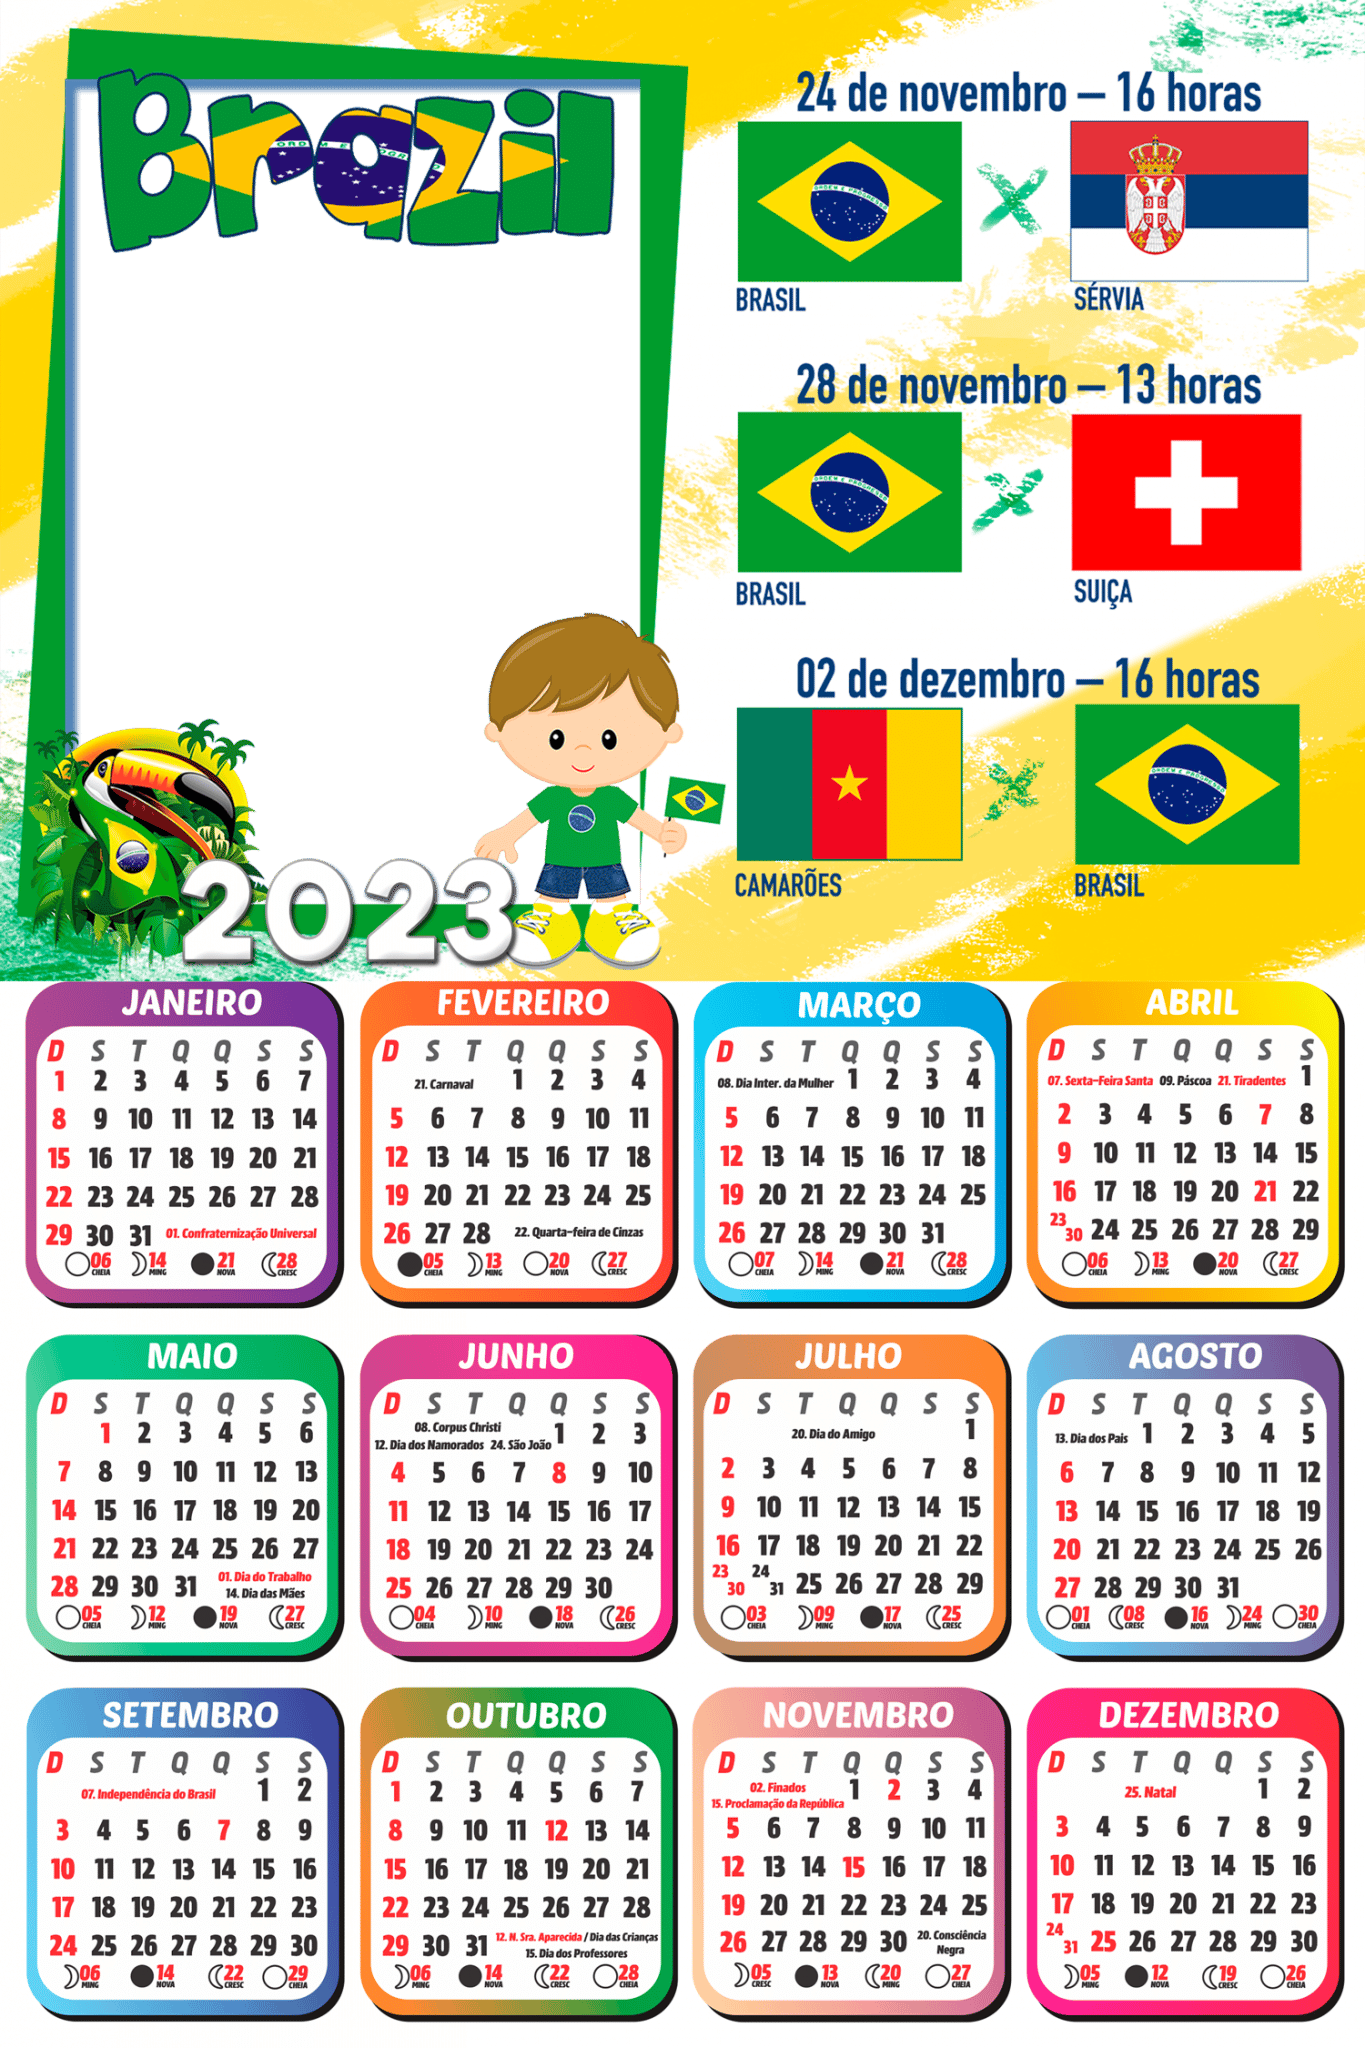 Calendário 2023 Jogos do Brasil Copa do Mundo Catar PNG - Imagem